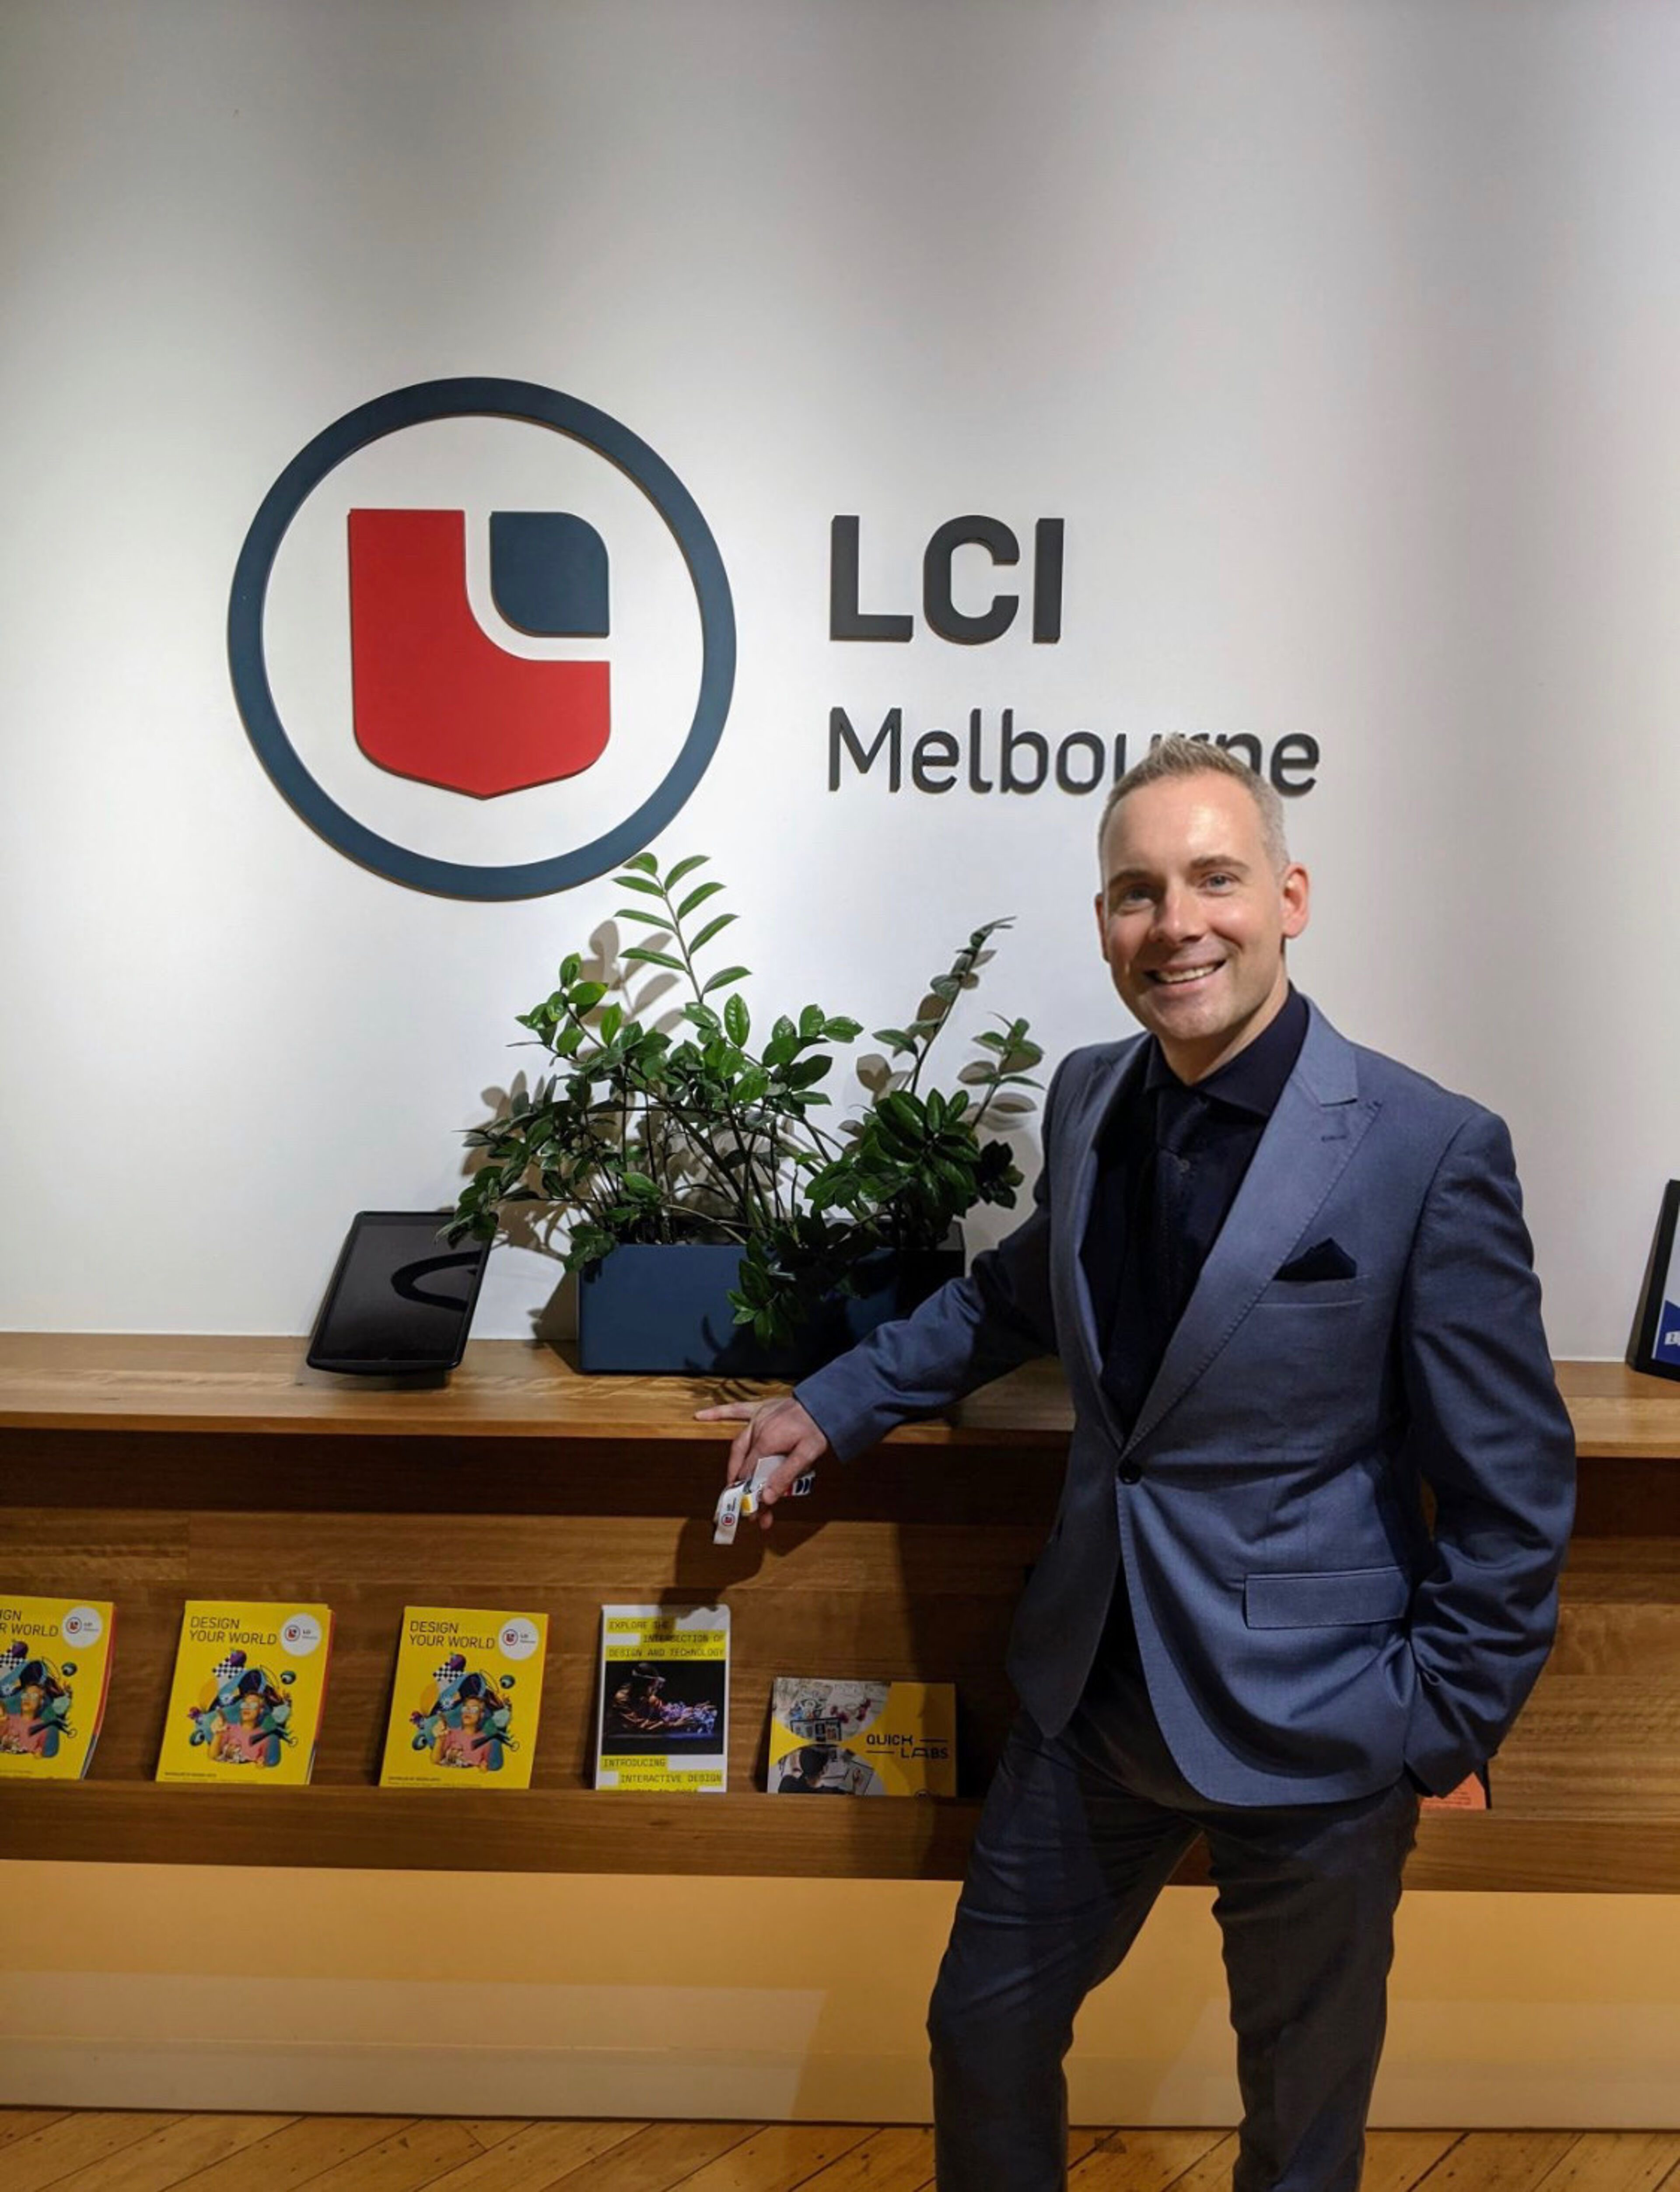 Un individu souriant se tient fièrement devant le logo de LCI Melbourne, symbolisant l'accueil chaleureux de l'institution.